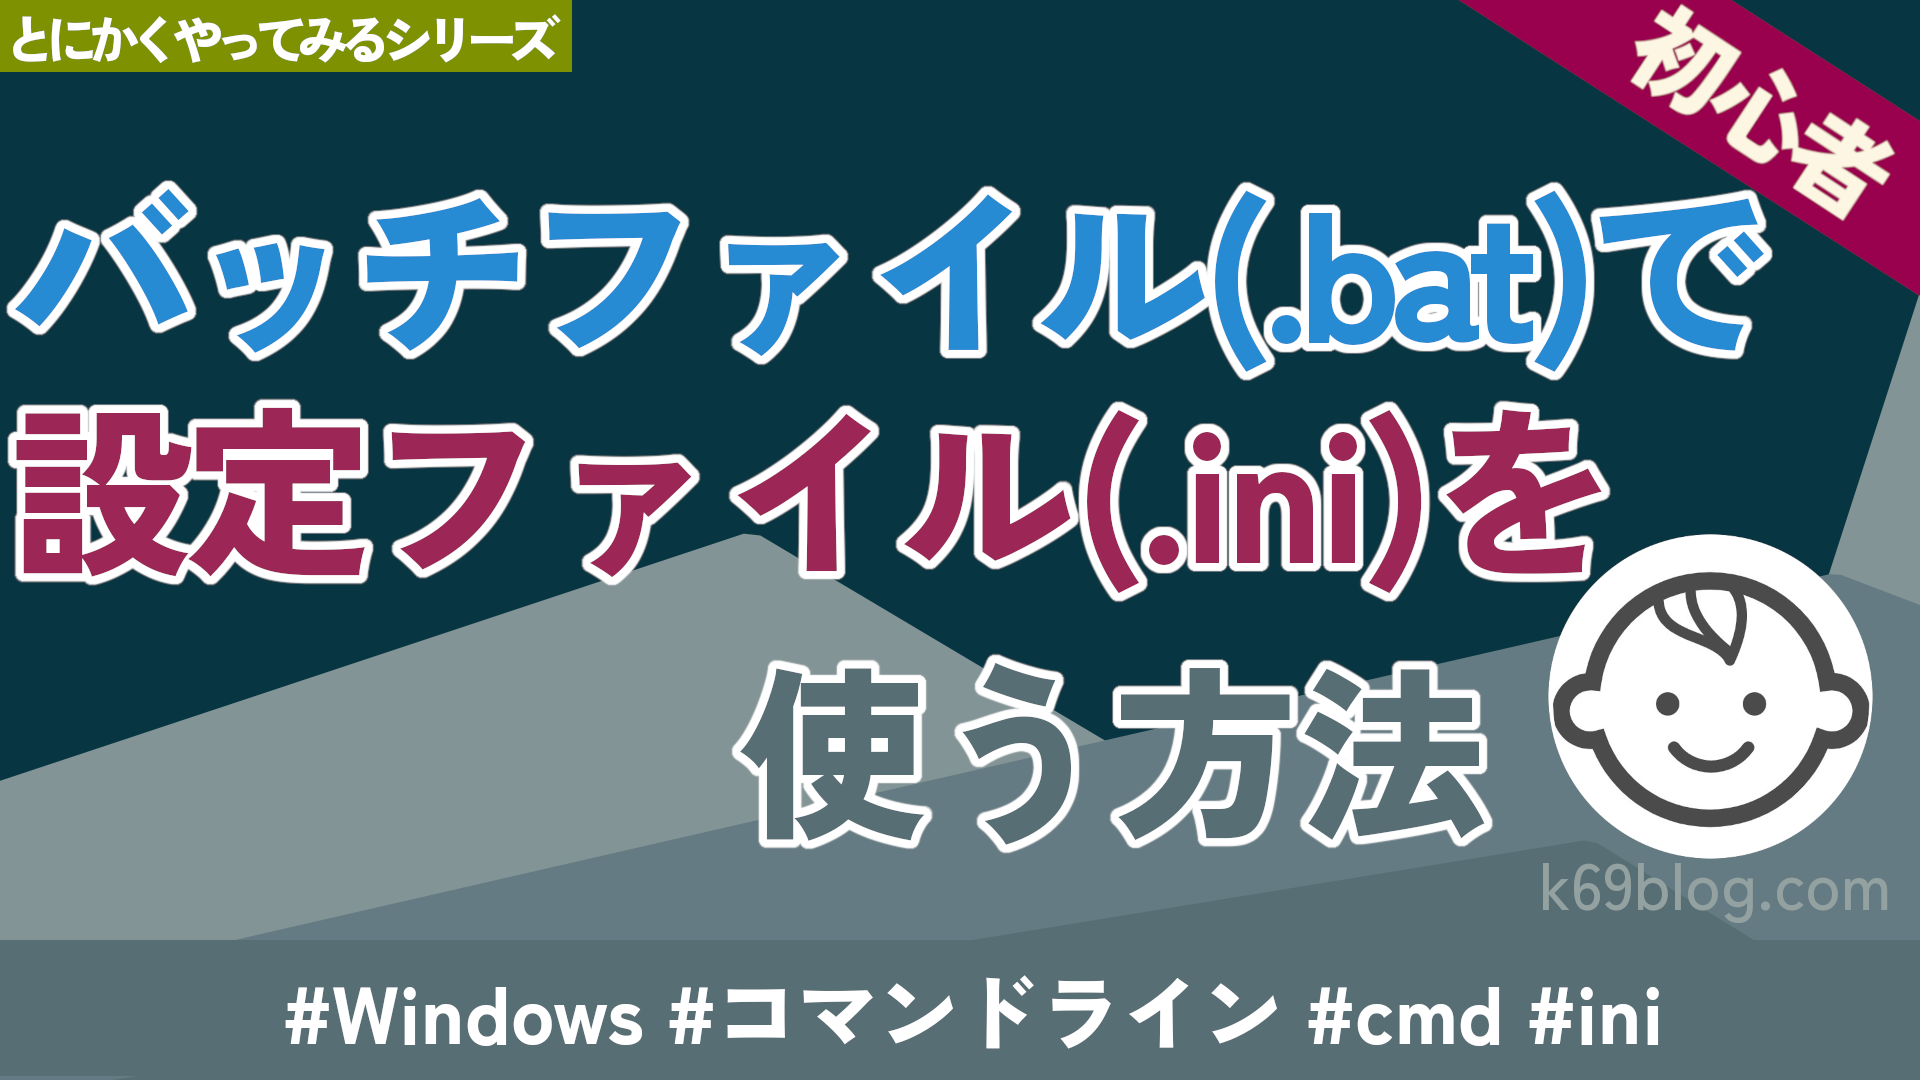 Cover Image for バッチファイル(.bat)で設定ファイル(.ini)を使う方法